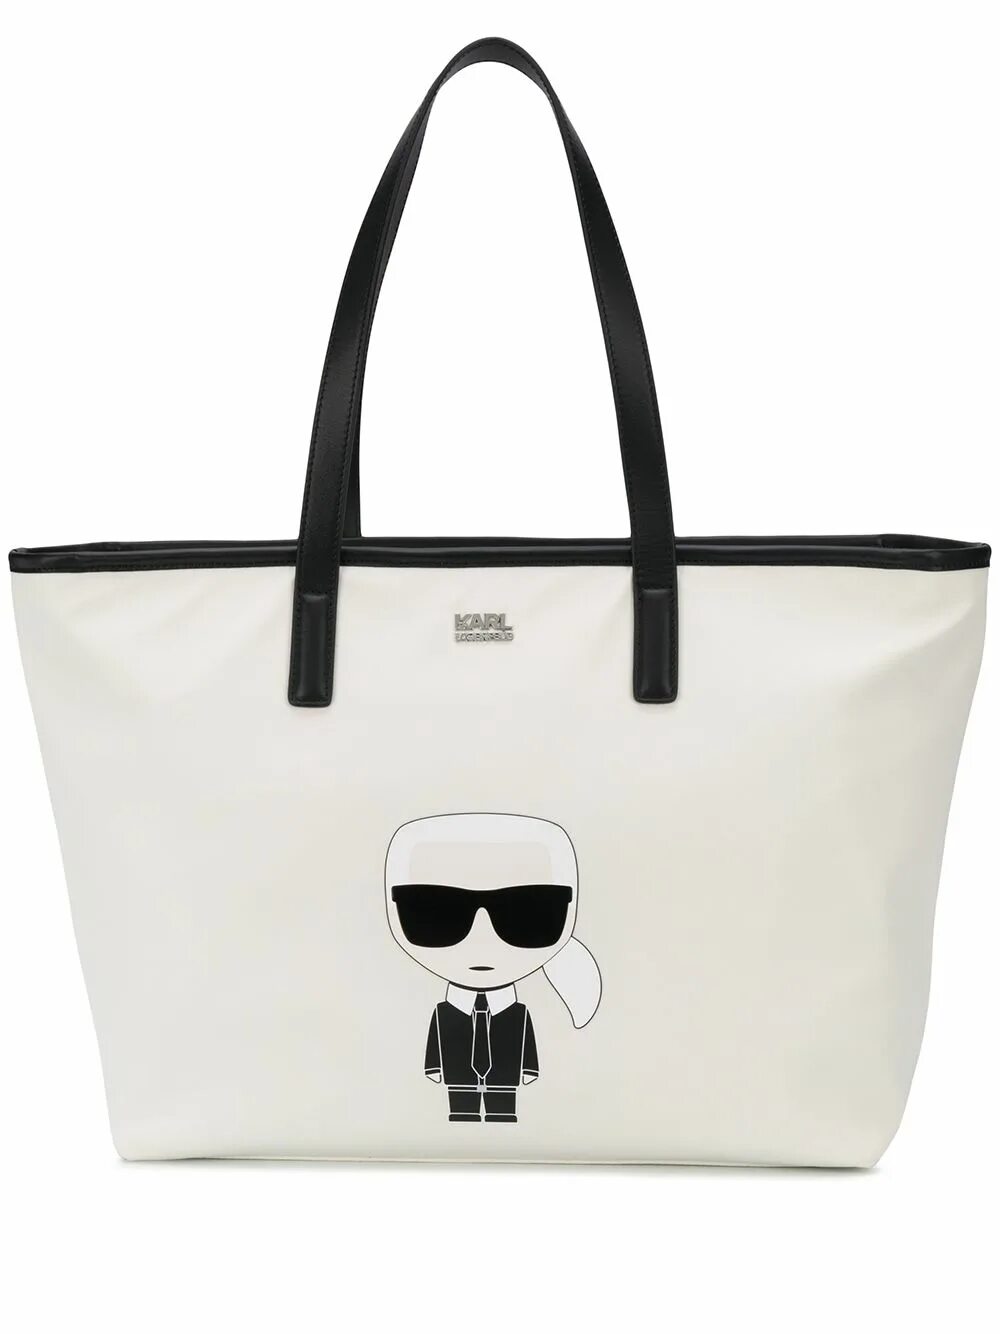 Купить сумку лагерфельд оригинал. Karl Lagerfeld ikonik сумка белая. Karl Lagerfeld сумка тоут. Сумка Karl Lagerfeld ikonik черная.